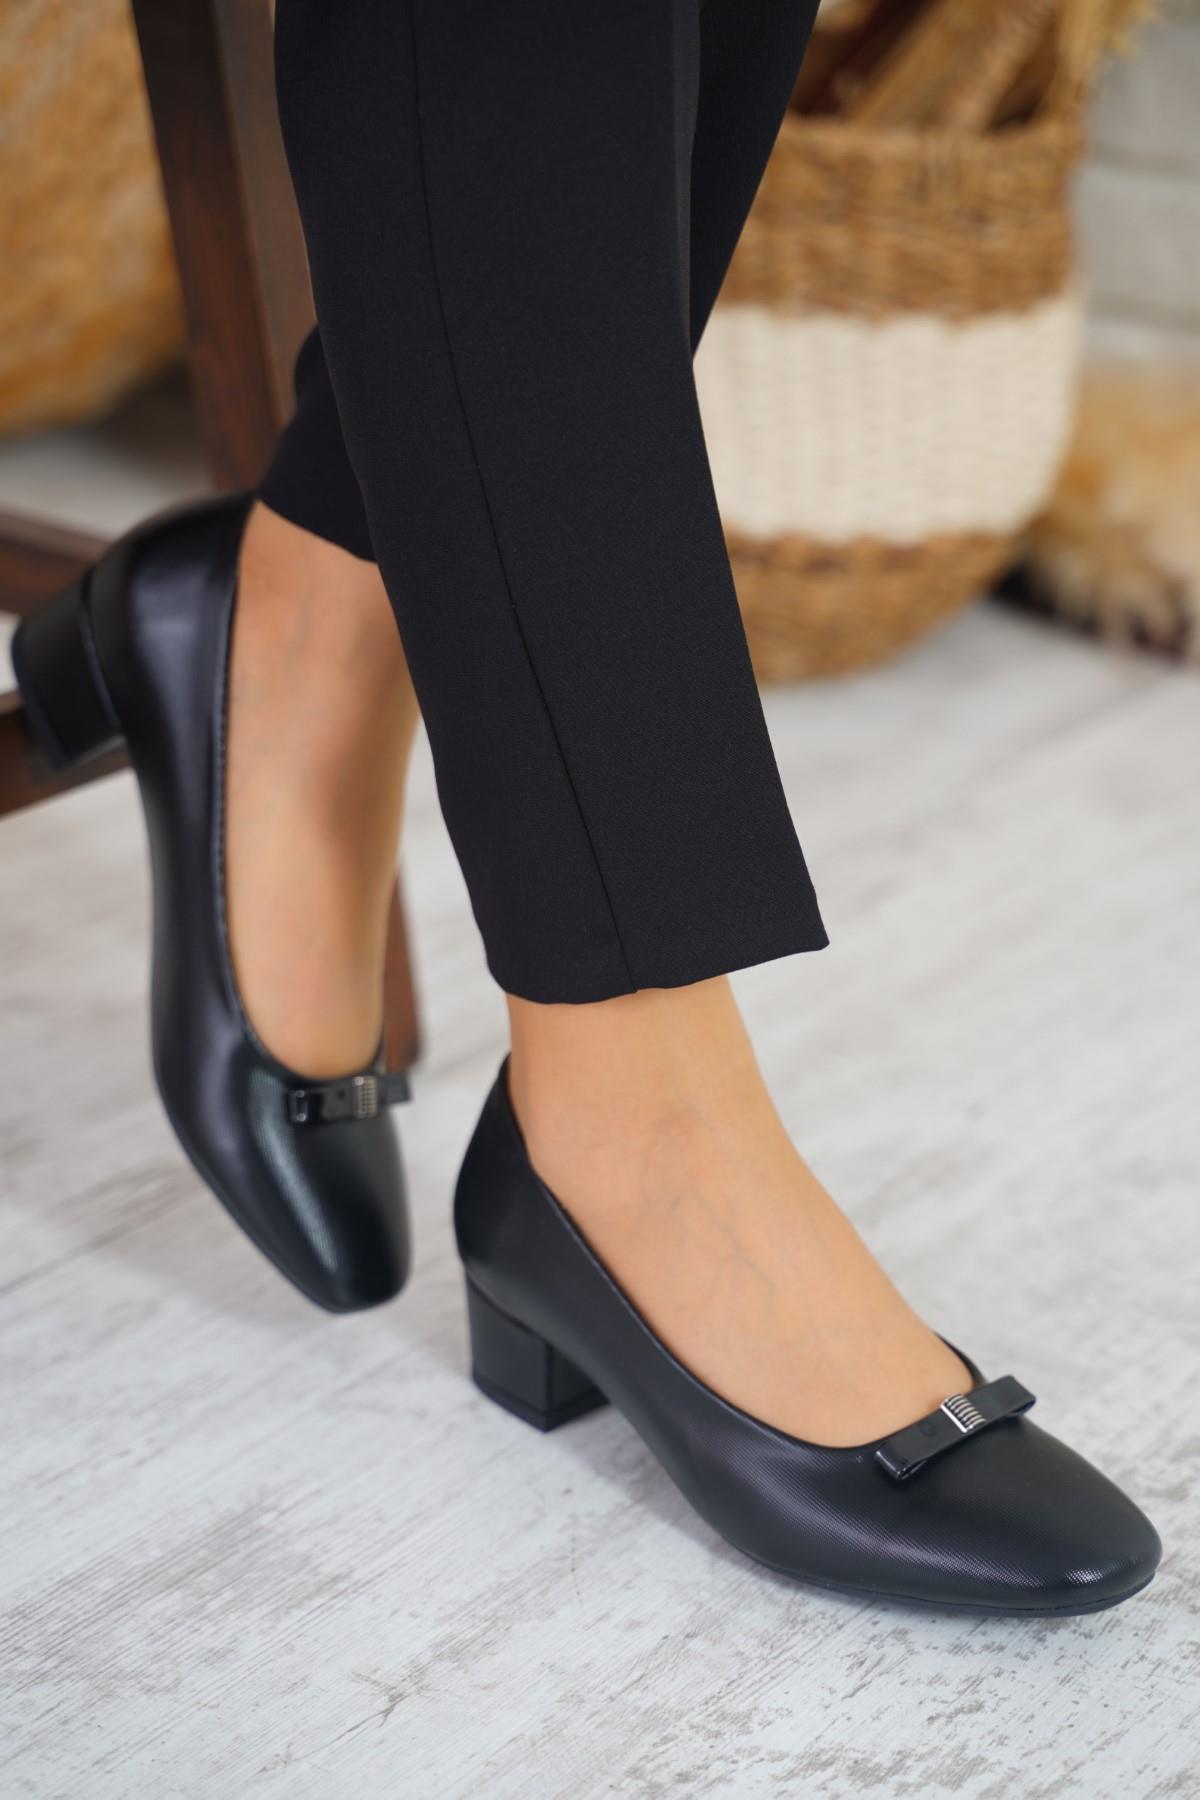 Ollie Kare Burun Fiyonk Kadın Topuklu Ayakkabı Siyah Saten